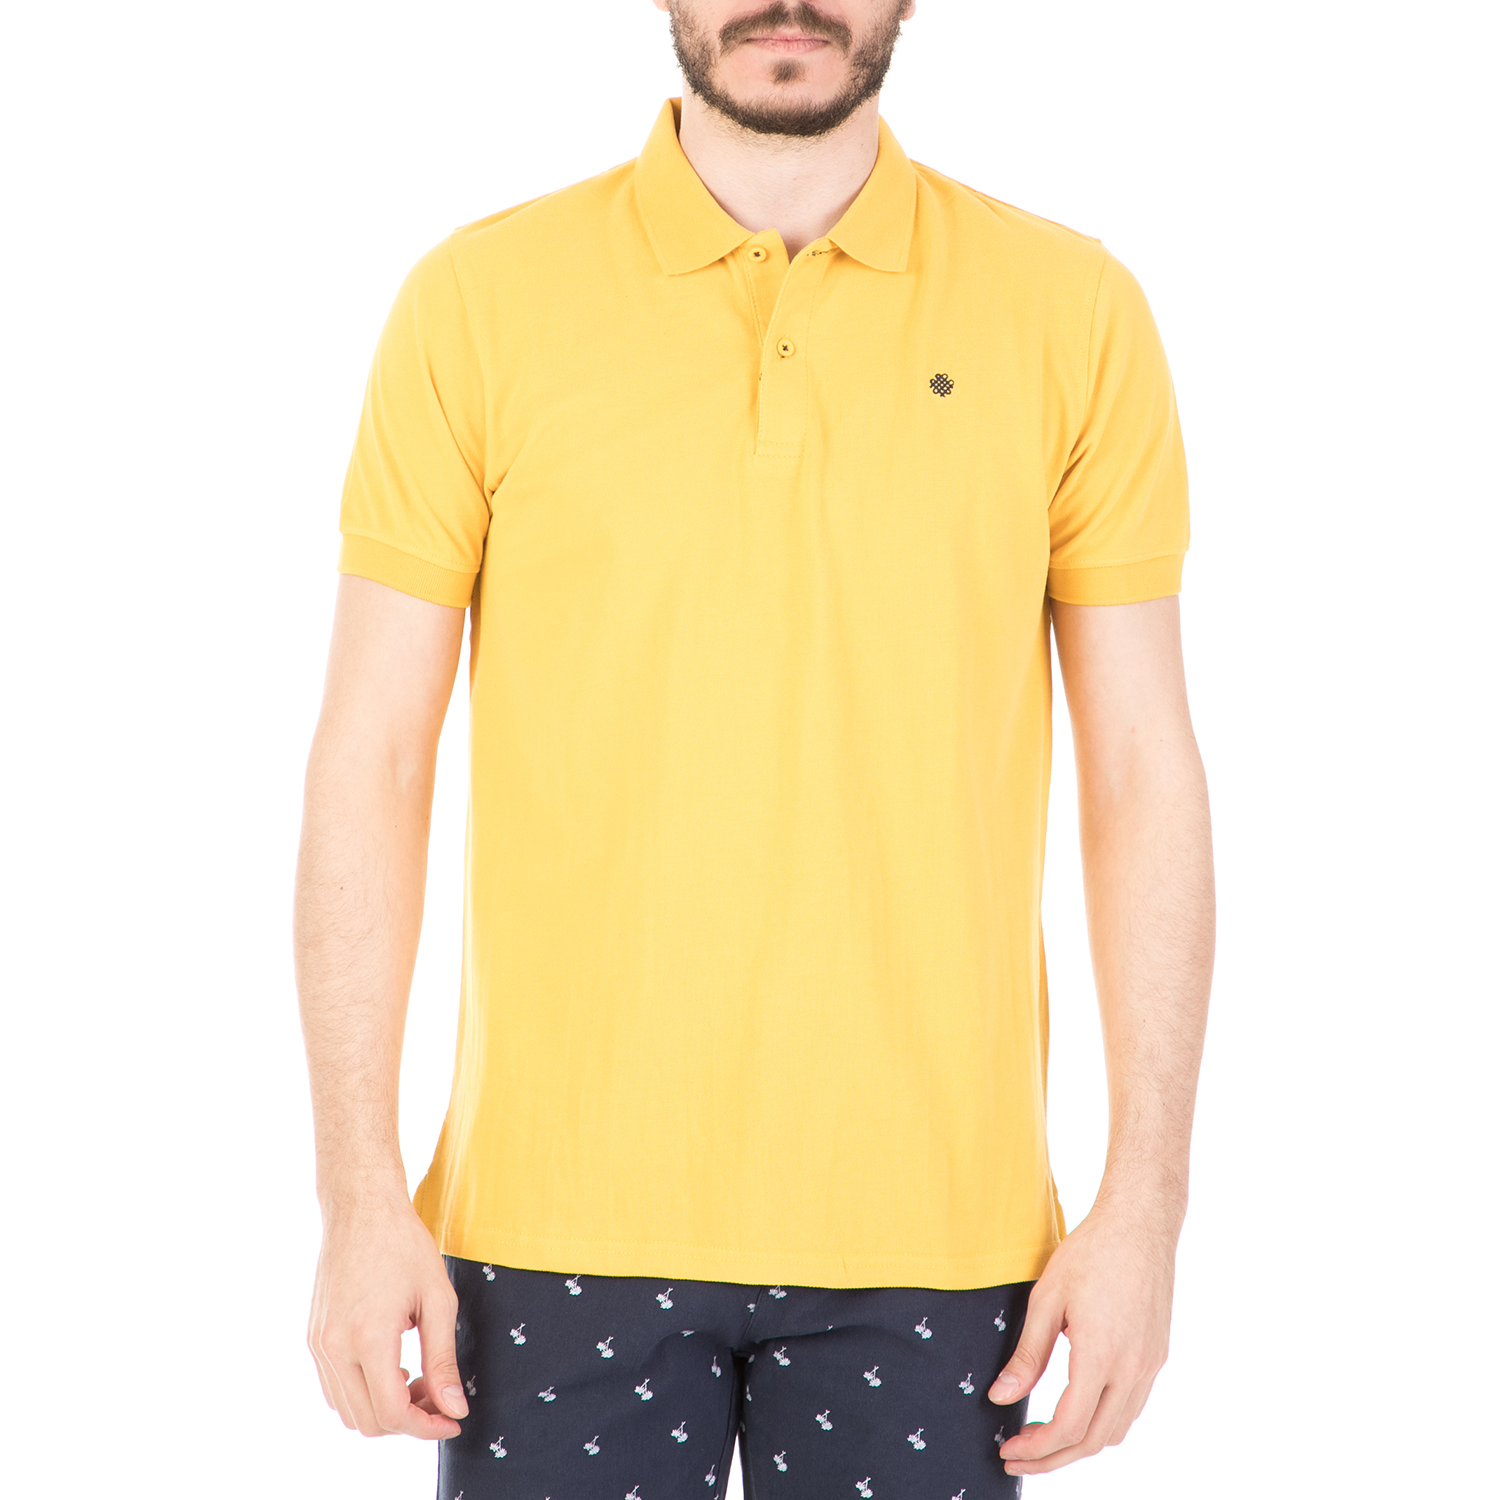 Ανδρικά/Ρούχα/Μπλούζες/Πόλο DORS - Ανδρική μπλούζα DORS κίτρινη